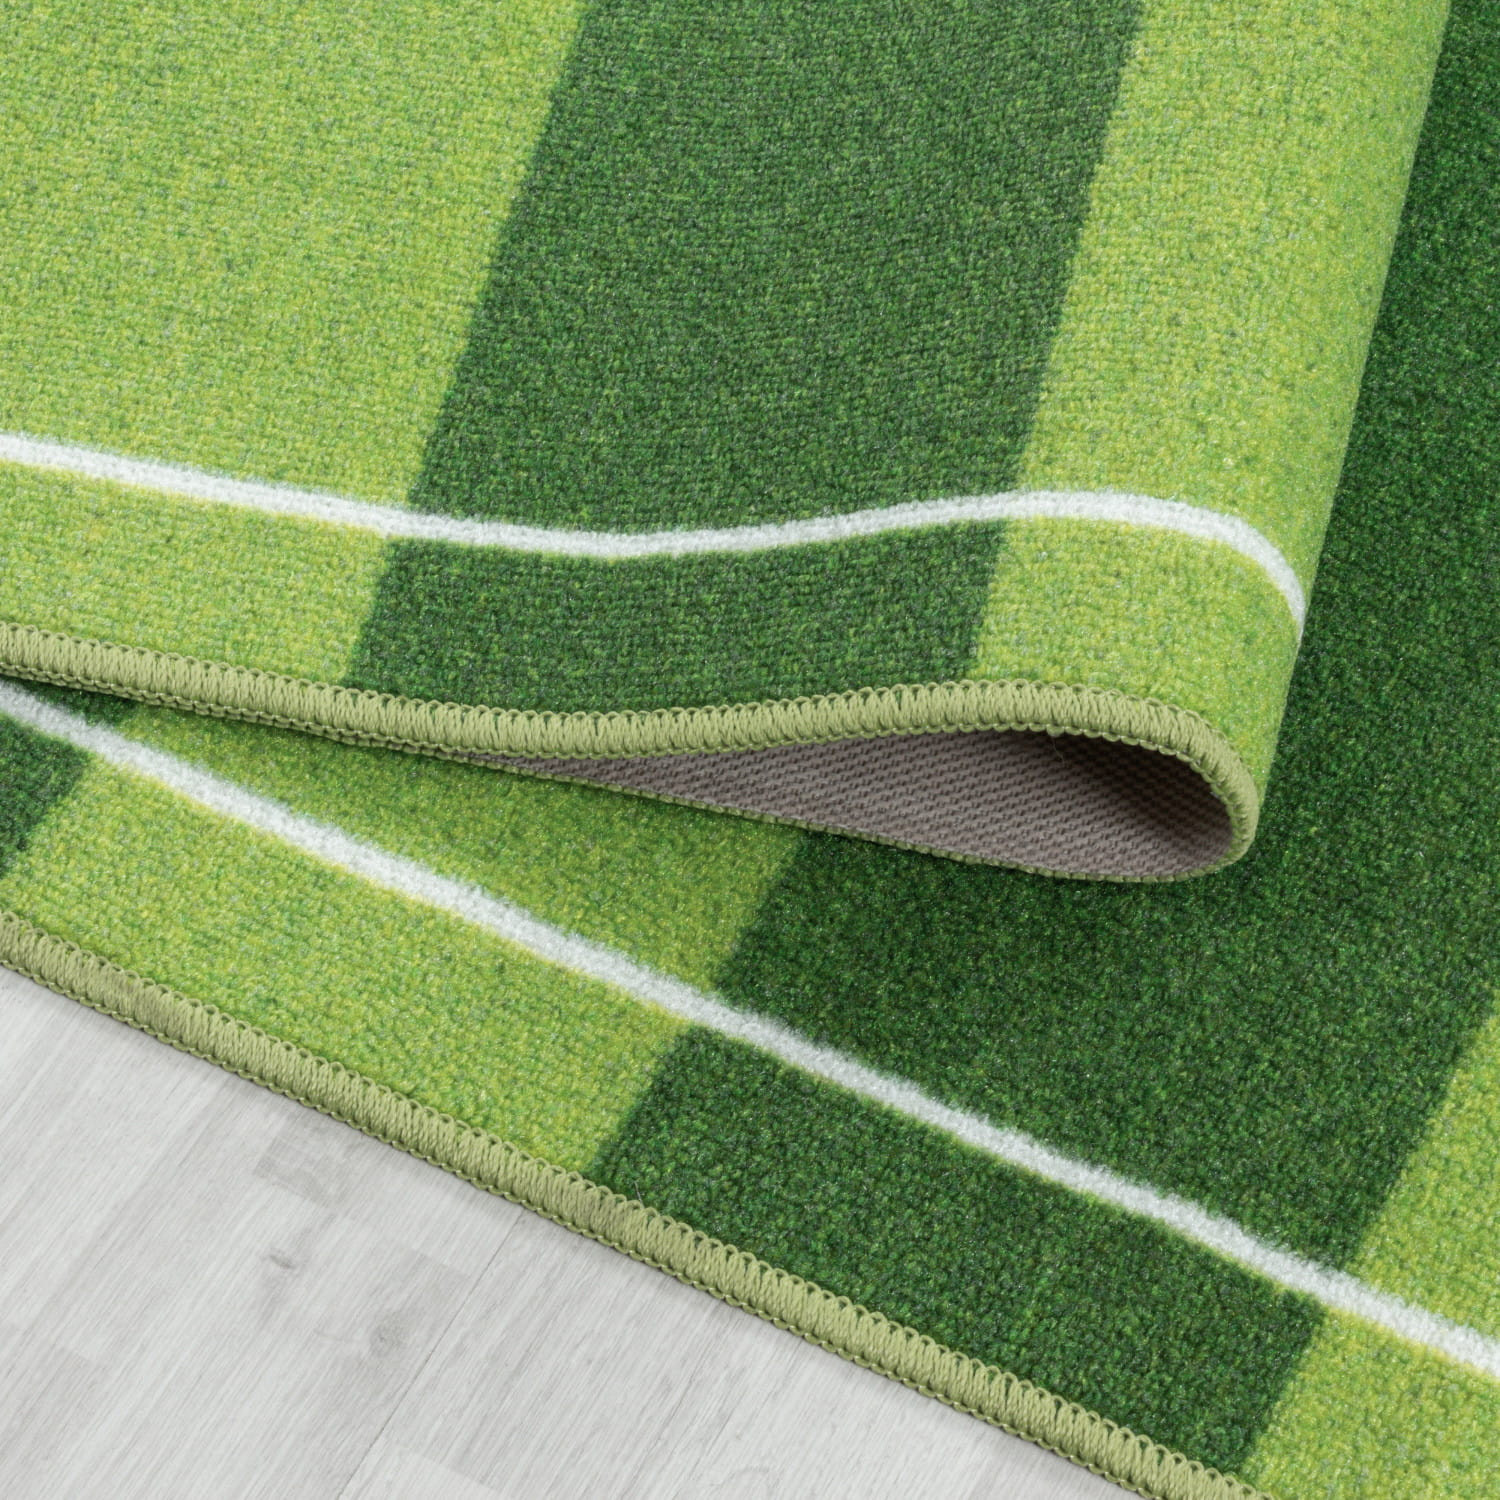 Detský protišmykový koberec Play ihrisko zelený 